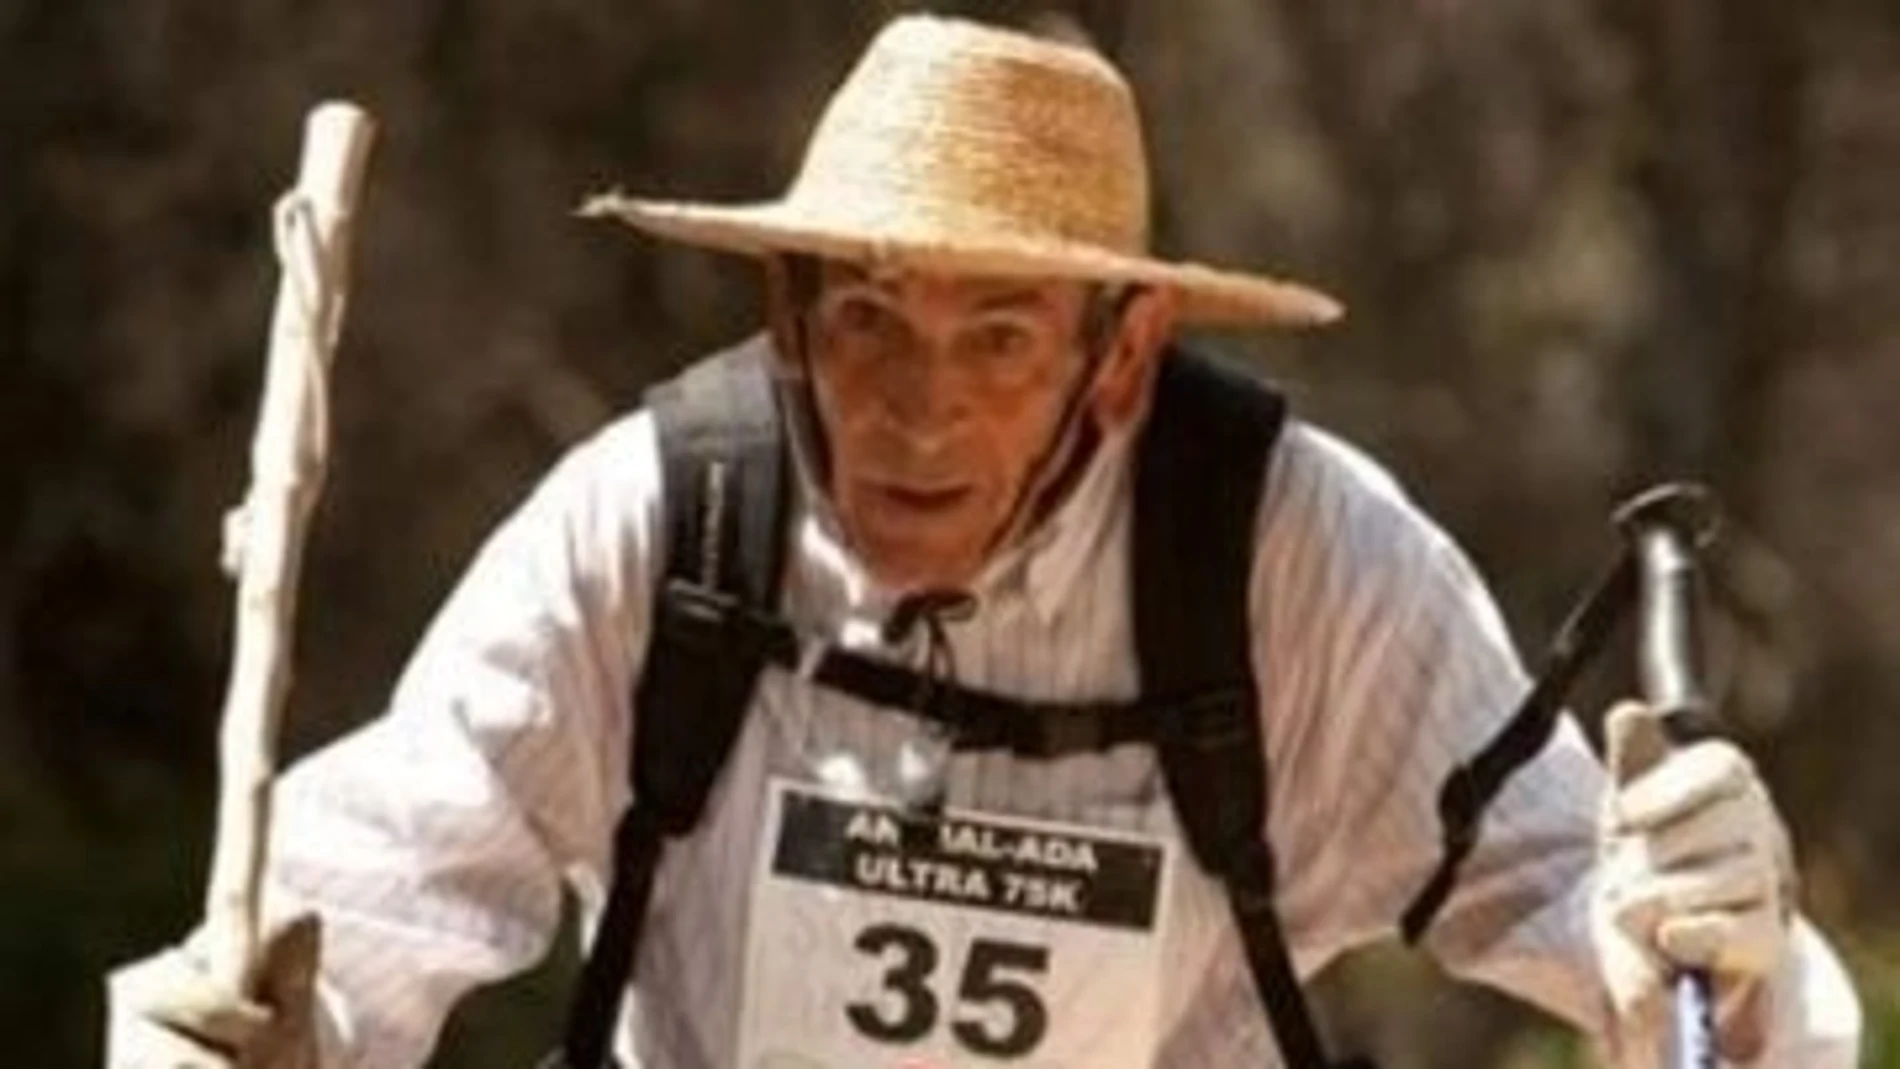 Súper Paco, el hombre que tiene 81 años y corrió 101 kilómetros - LA NACION